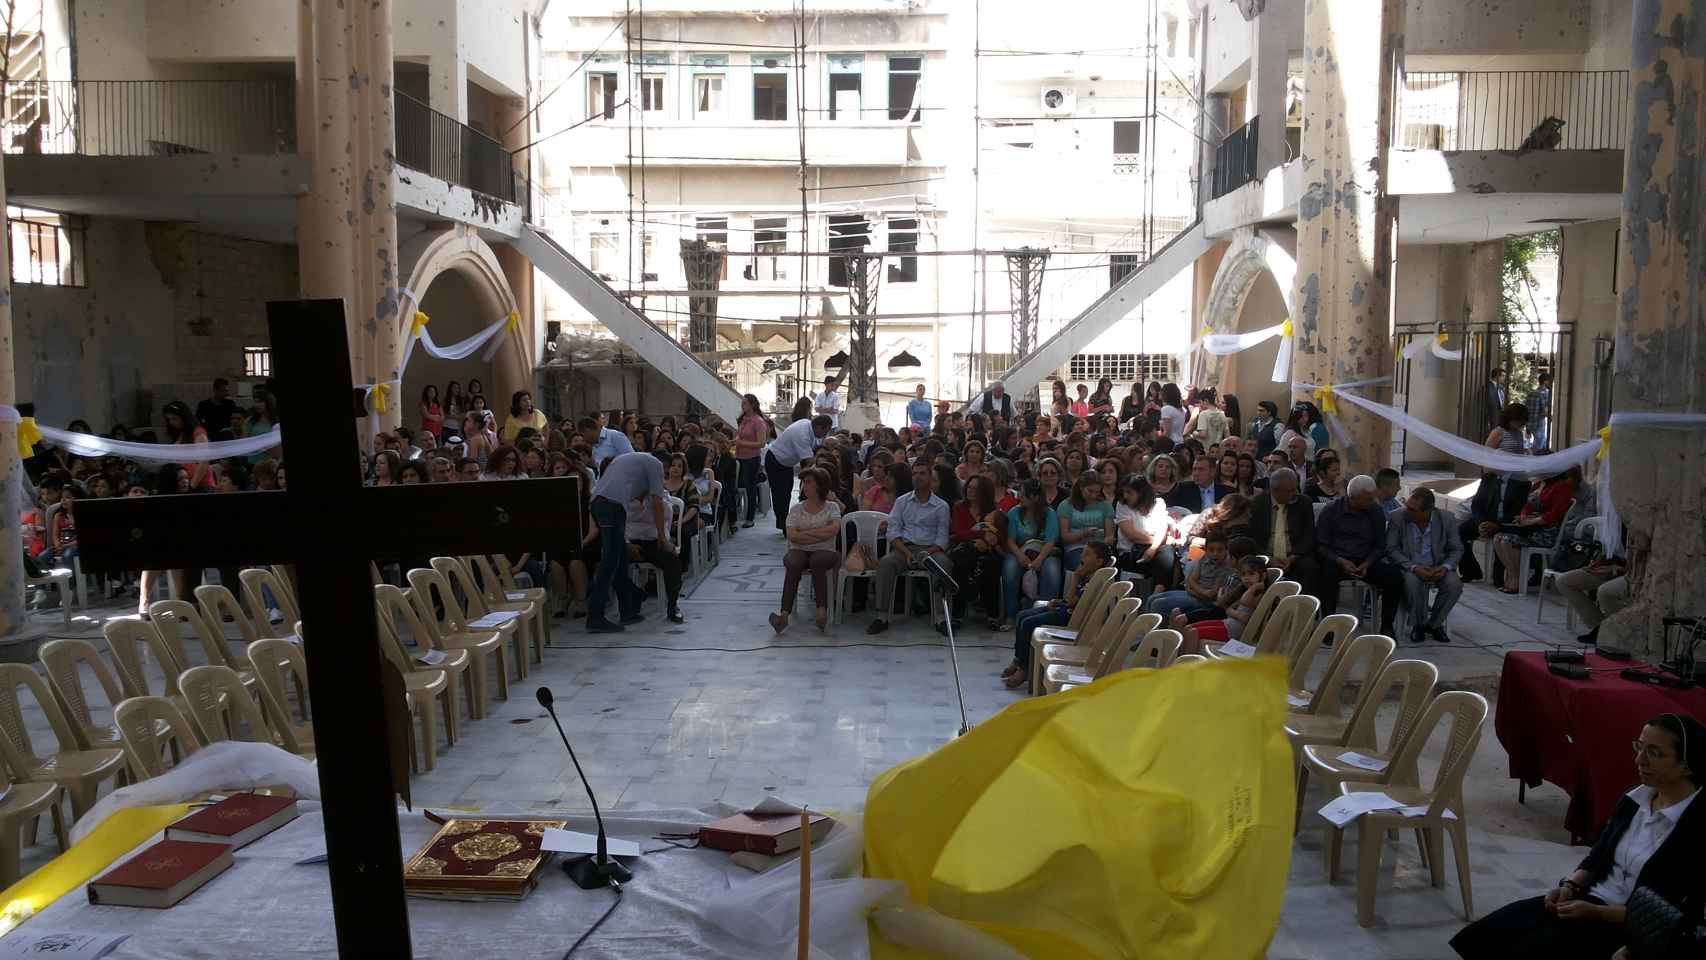 Los fieles de Homs acuden a rezar a la catedral derruida durante la guerra.